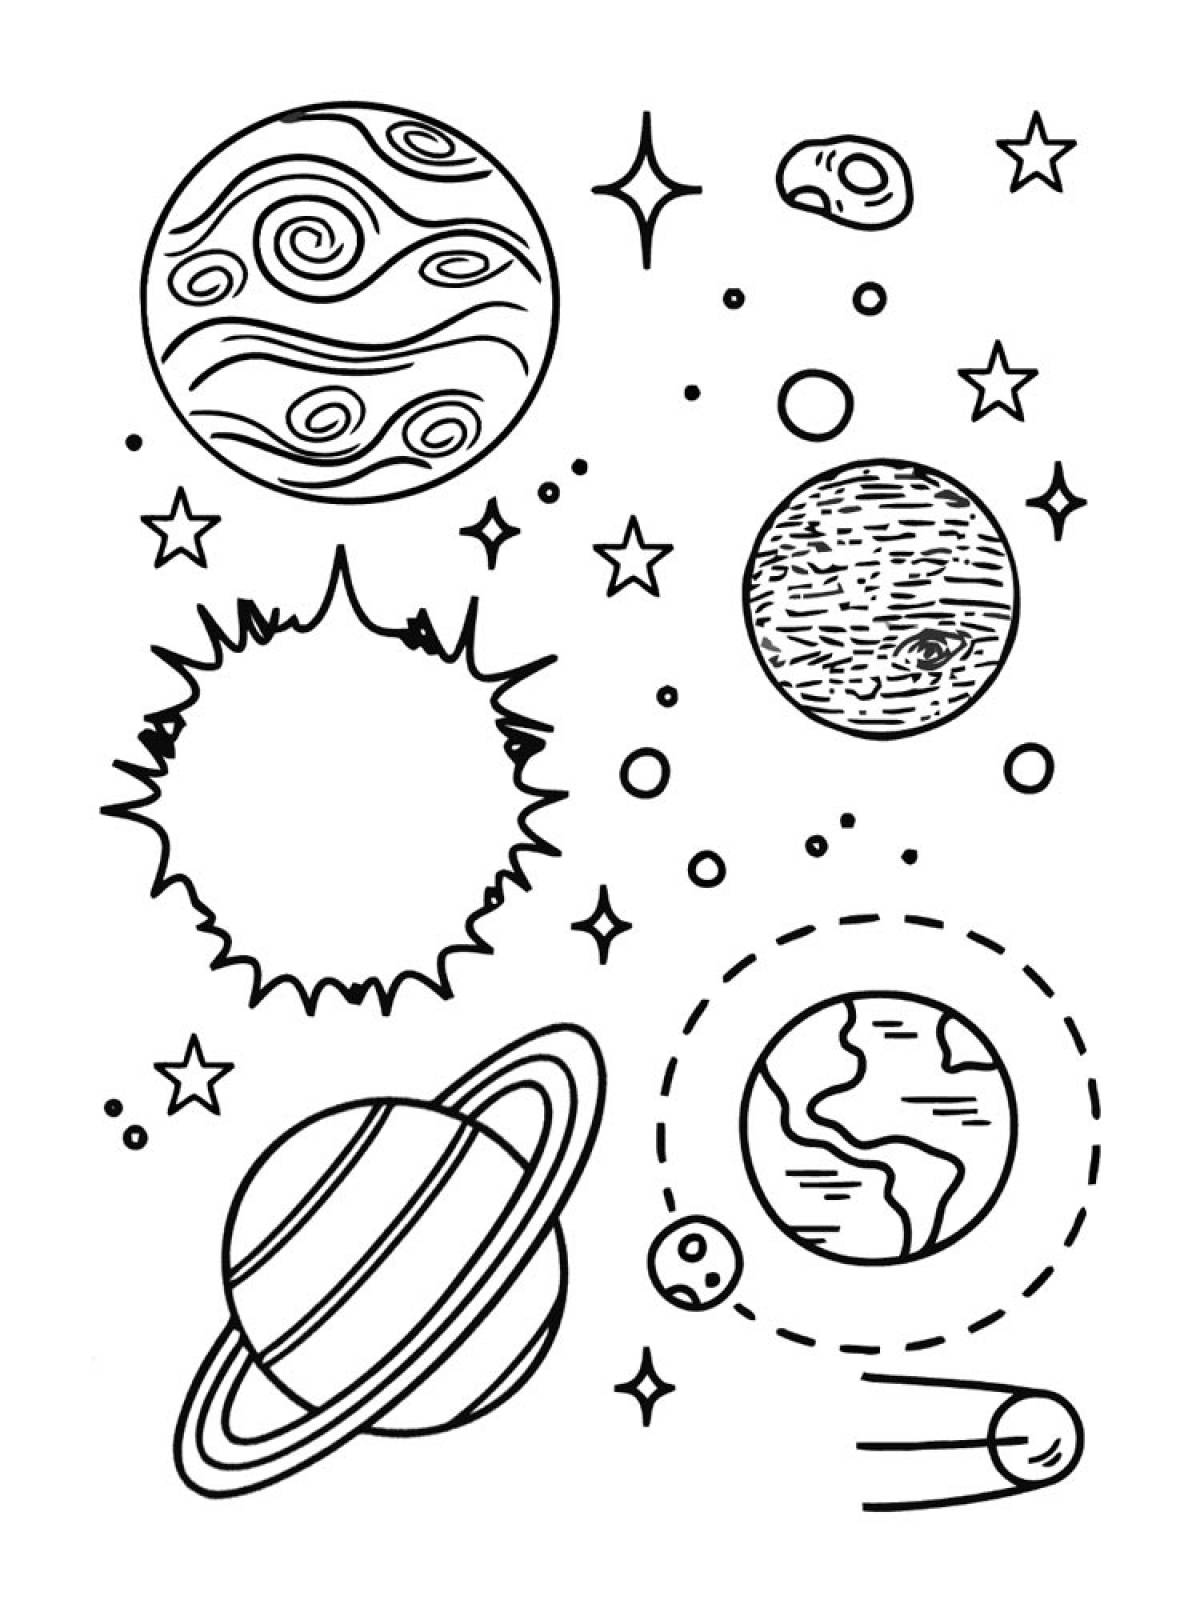 Картинки планеты солнечной системы для детей распечатать. Планеты раскраска. Солнечная система раскраска. Планеты солнечной системы раскраска. Раскраска космос и планеты.